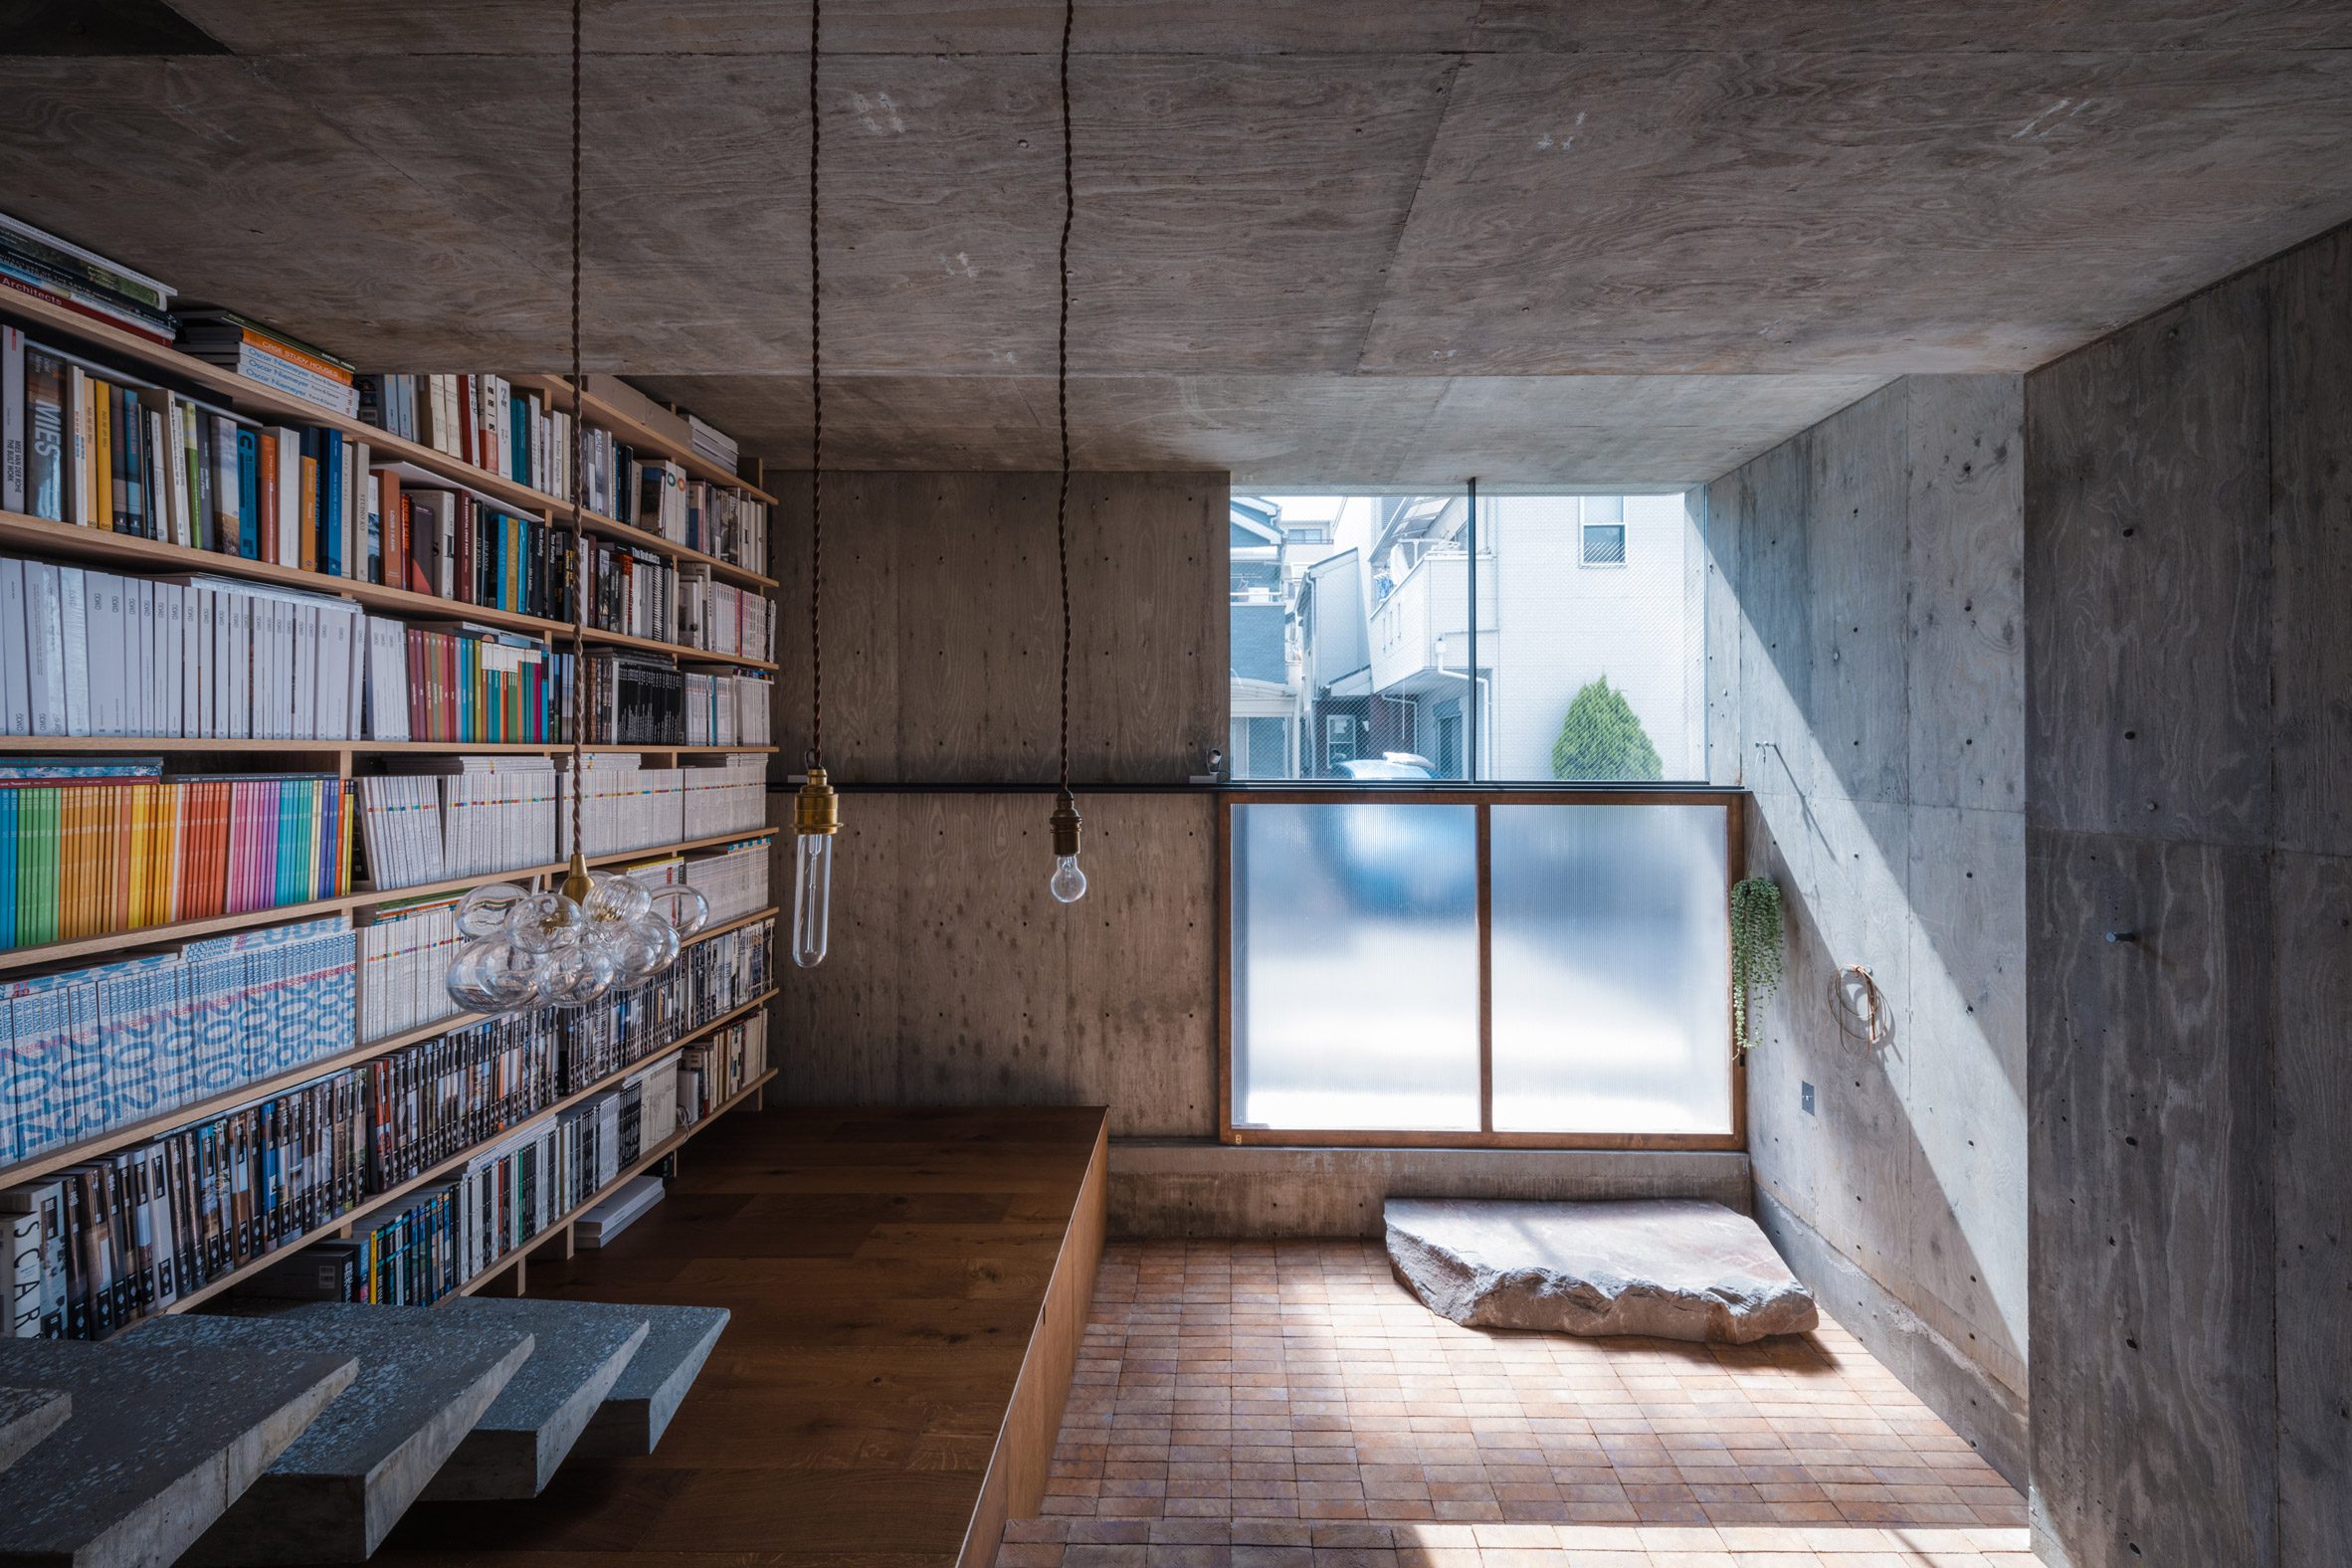 Concrete home interior with a bookshelf wall